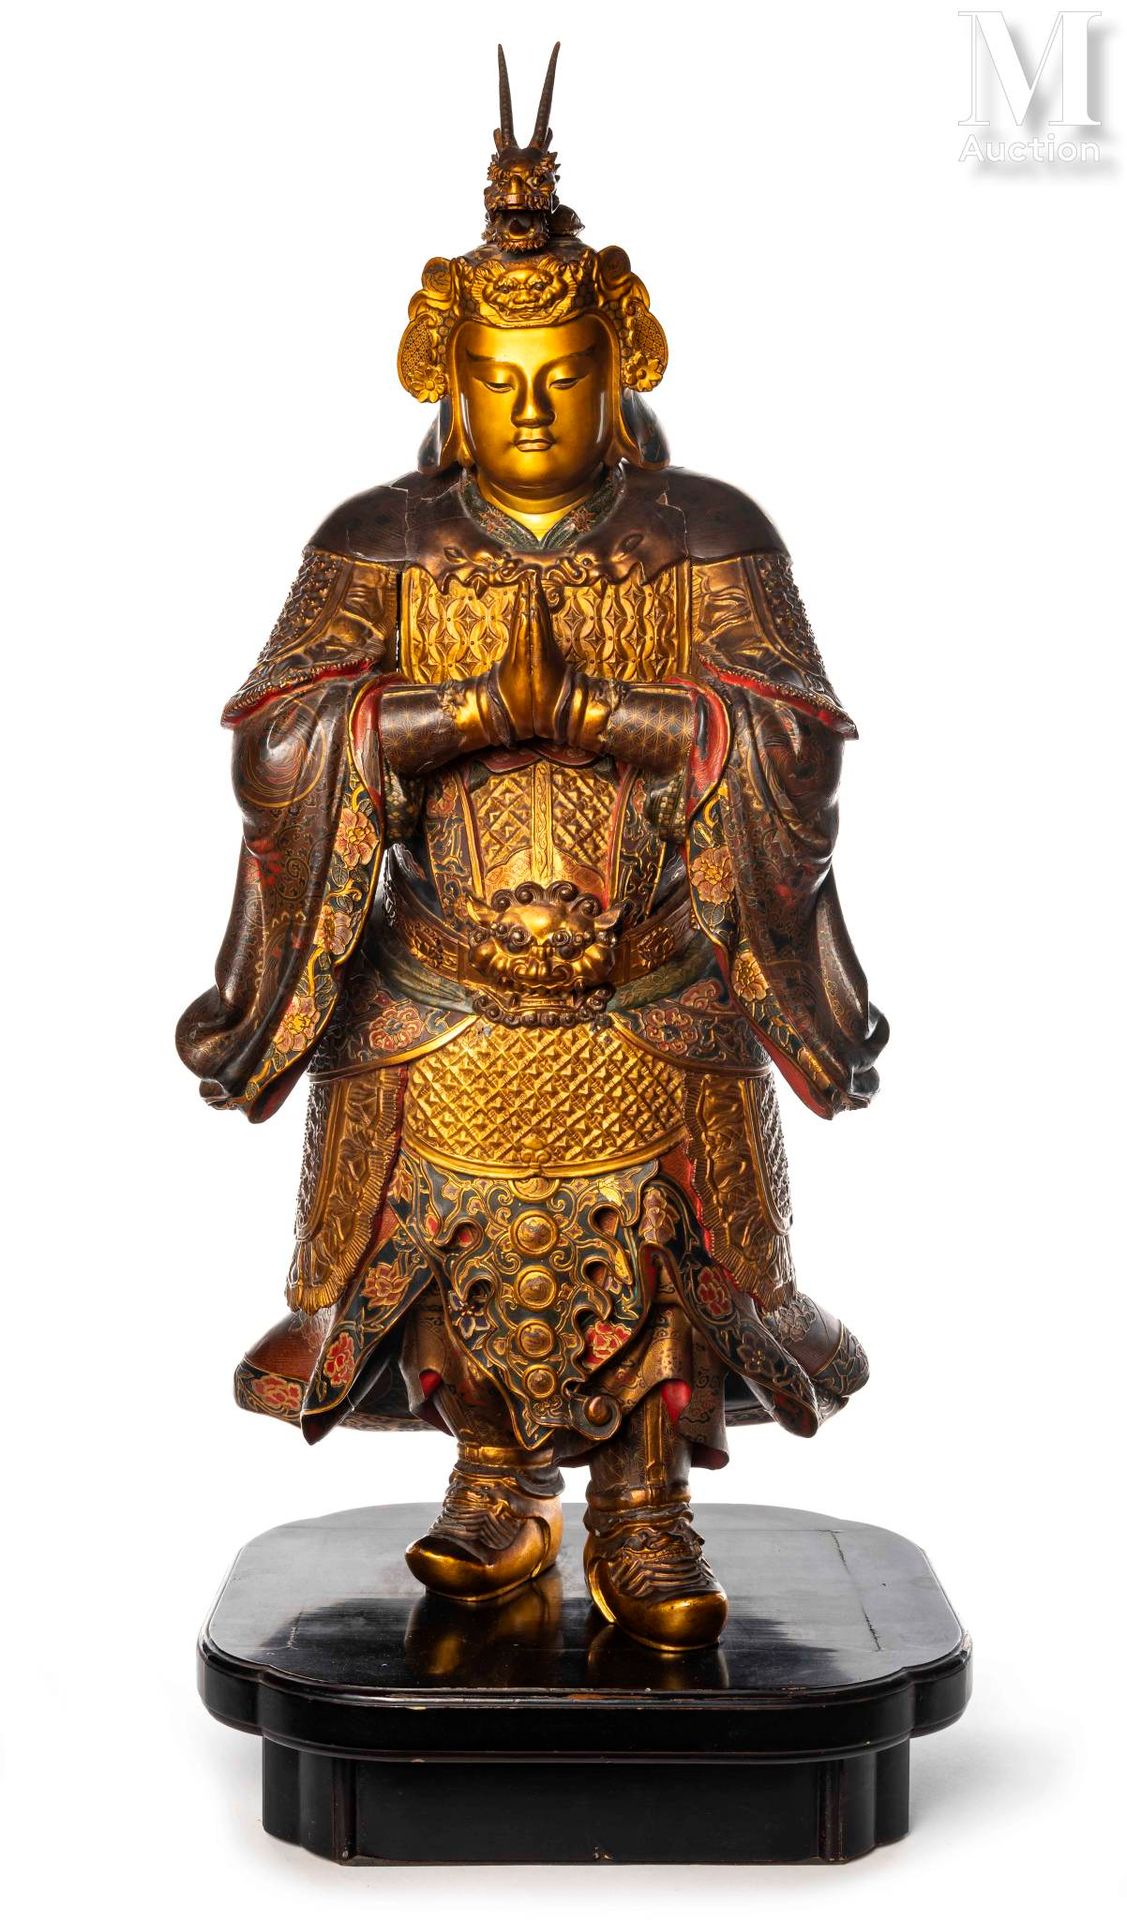 JAPON, XIXe siècle Scultura in legno laccato e dorato

raffigurante il dio Idate&hellip;